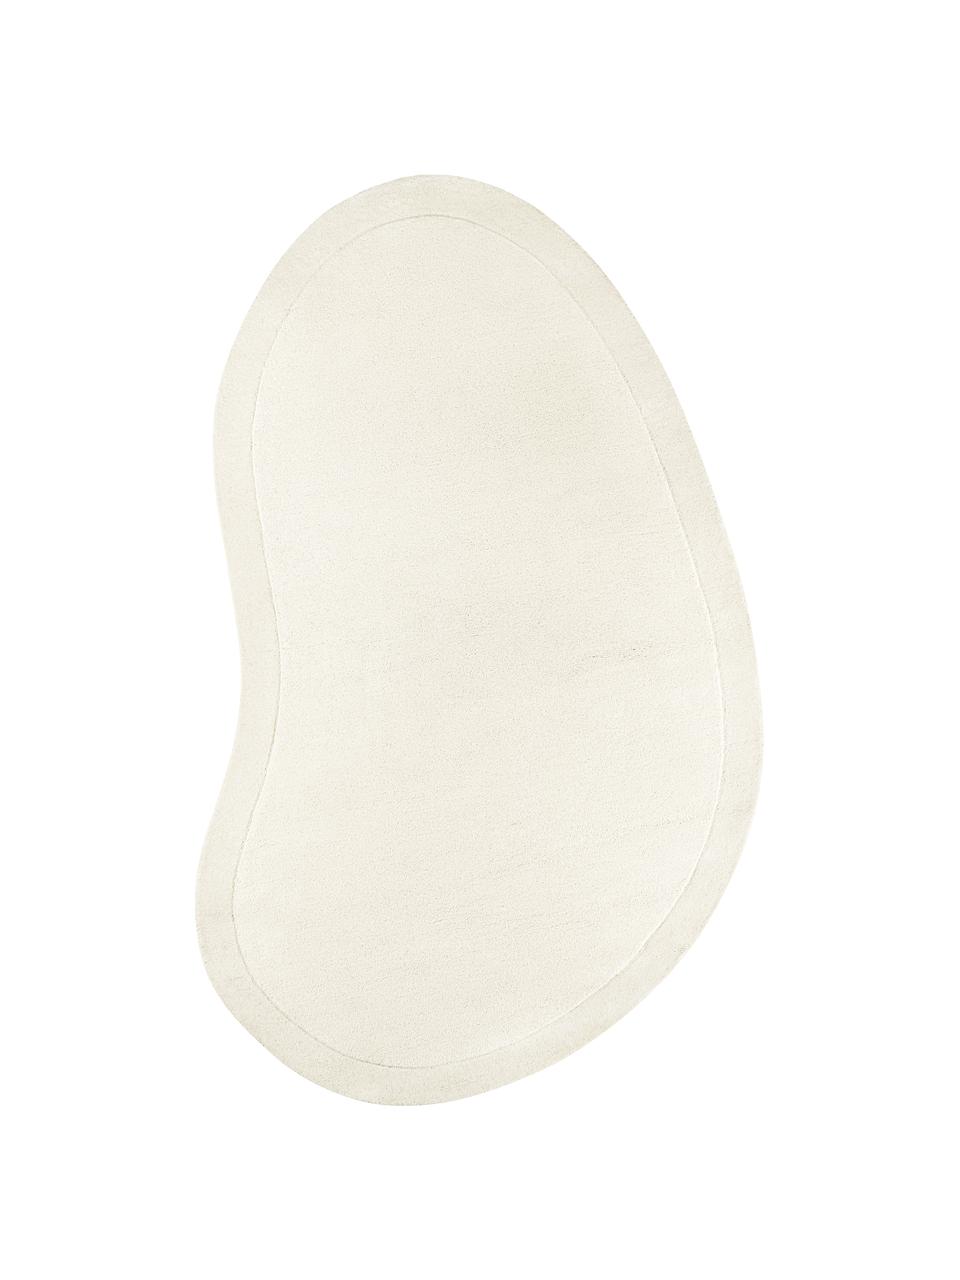 Tappeto in lana bianco crema taftato a mano dalla forma organica Kadey, Retro: 100% cotone Nel caso dei , Bianco crema, Larg. 120 x Lung. 180 cm (taglia S)